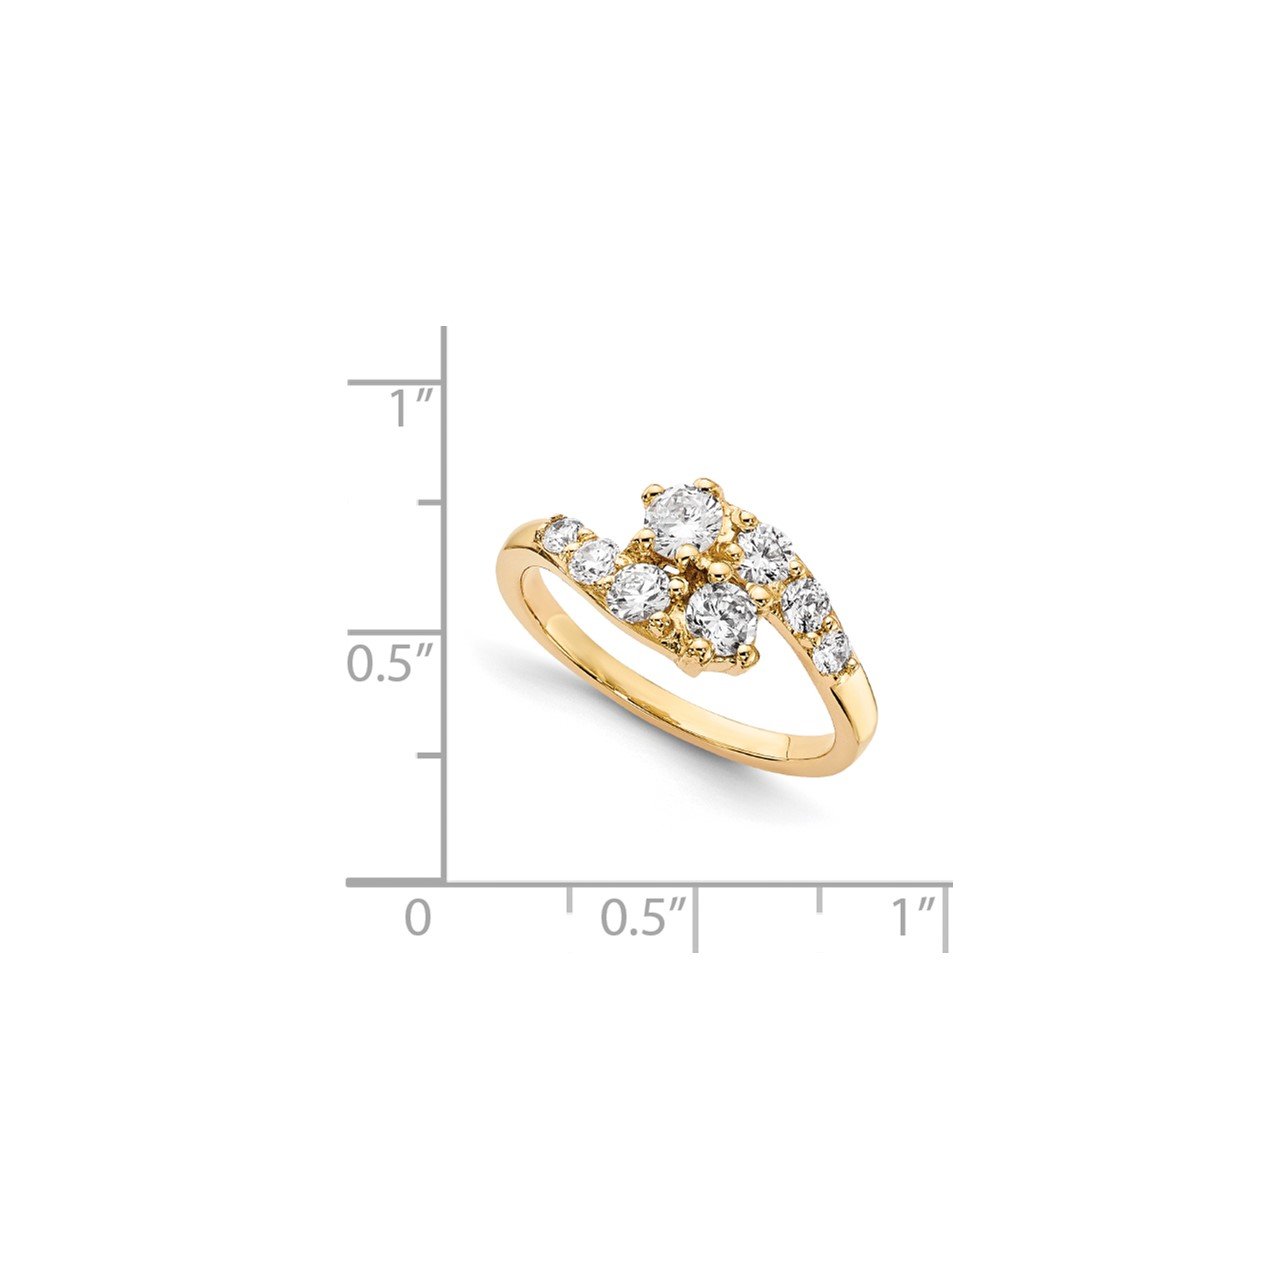 14KY AAA Diamond 2-stone Ring Semi-Mount - 2.8 mm center stones-6